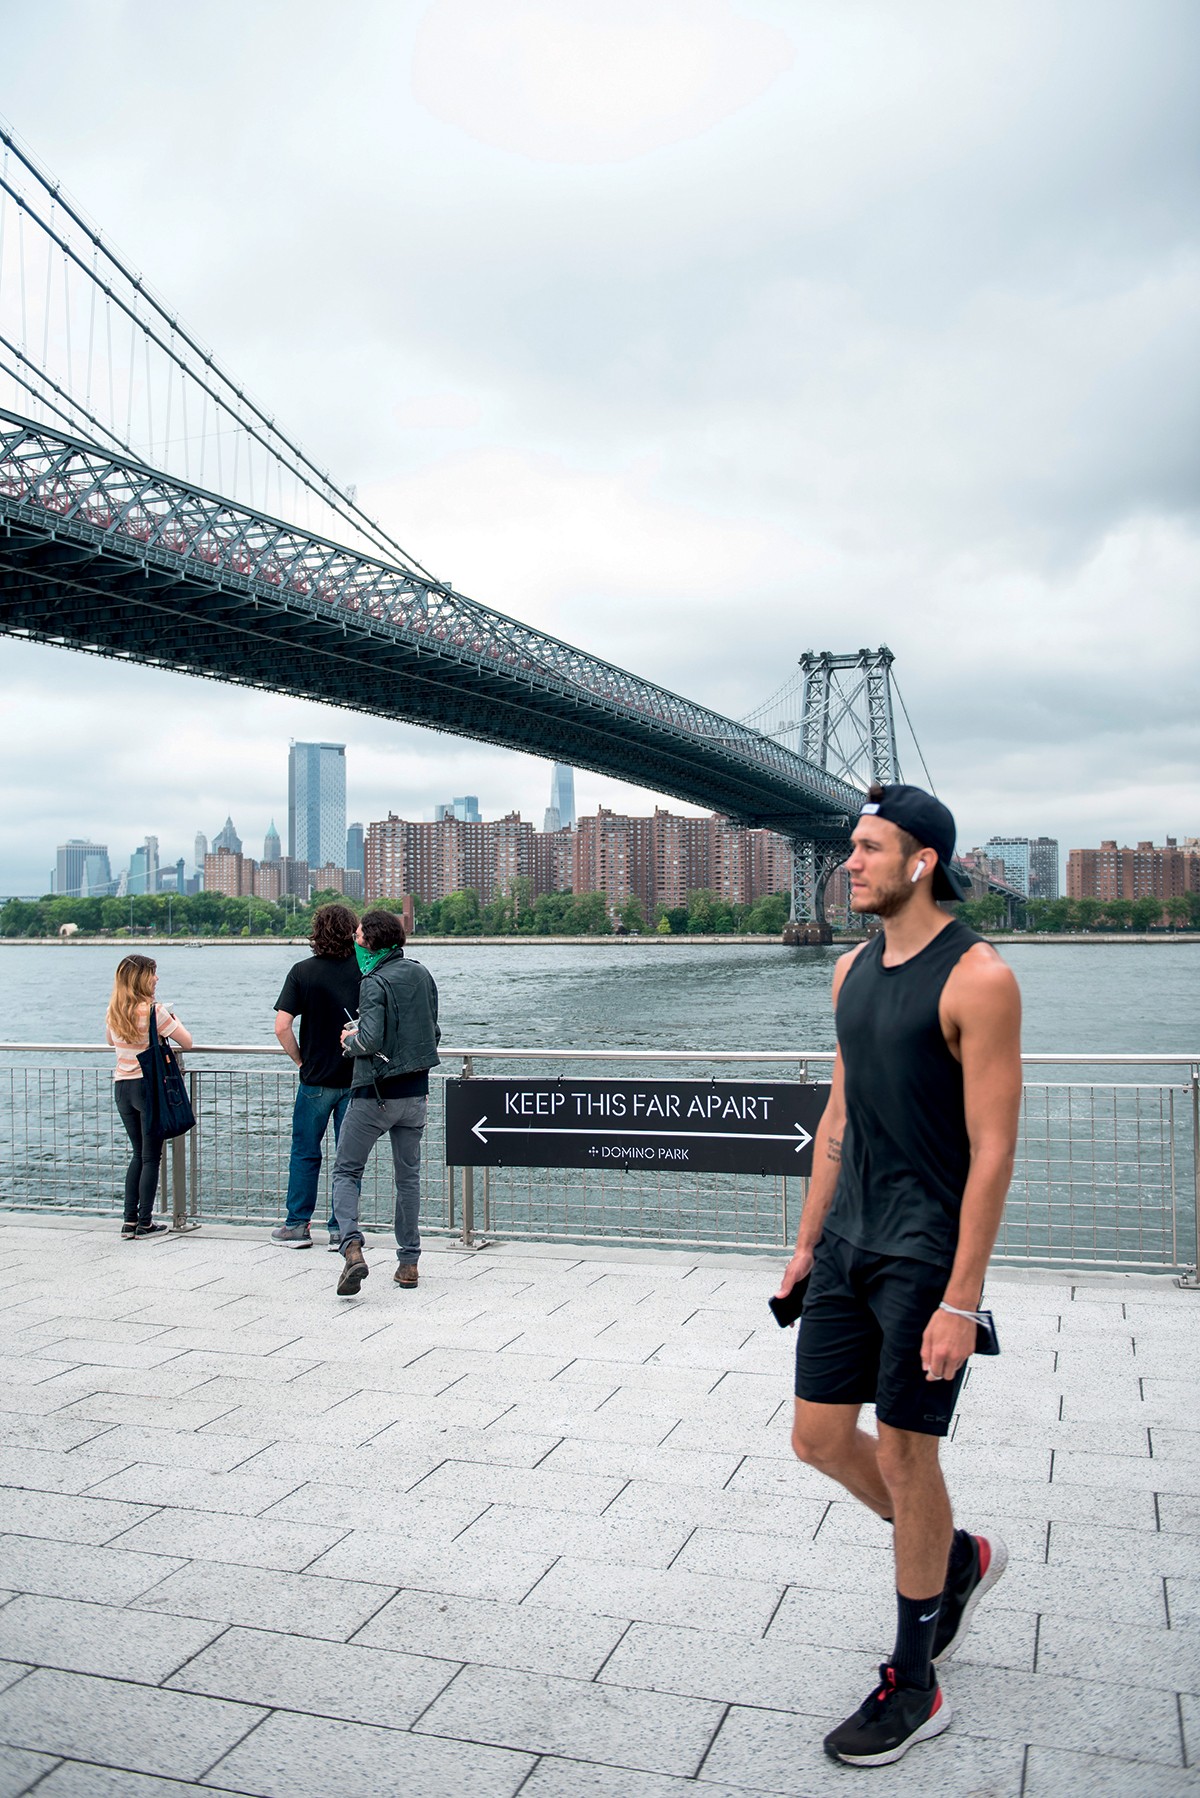 Nova York, 20 de junho de 2020 grades lembram a necessidade de distanciamento  no domino park, no Brooklyn (Foto: Paula Lobo)